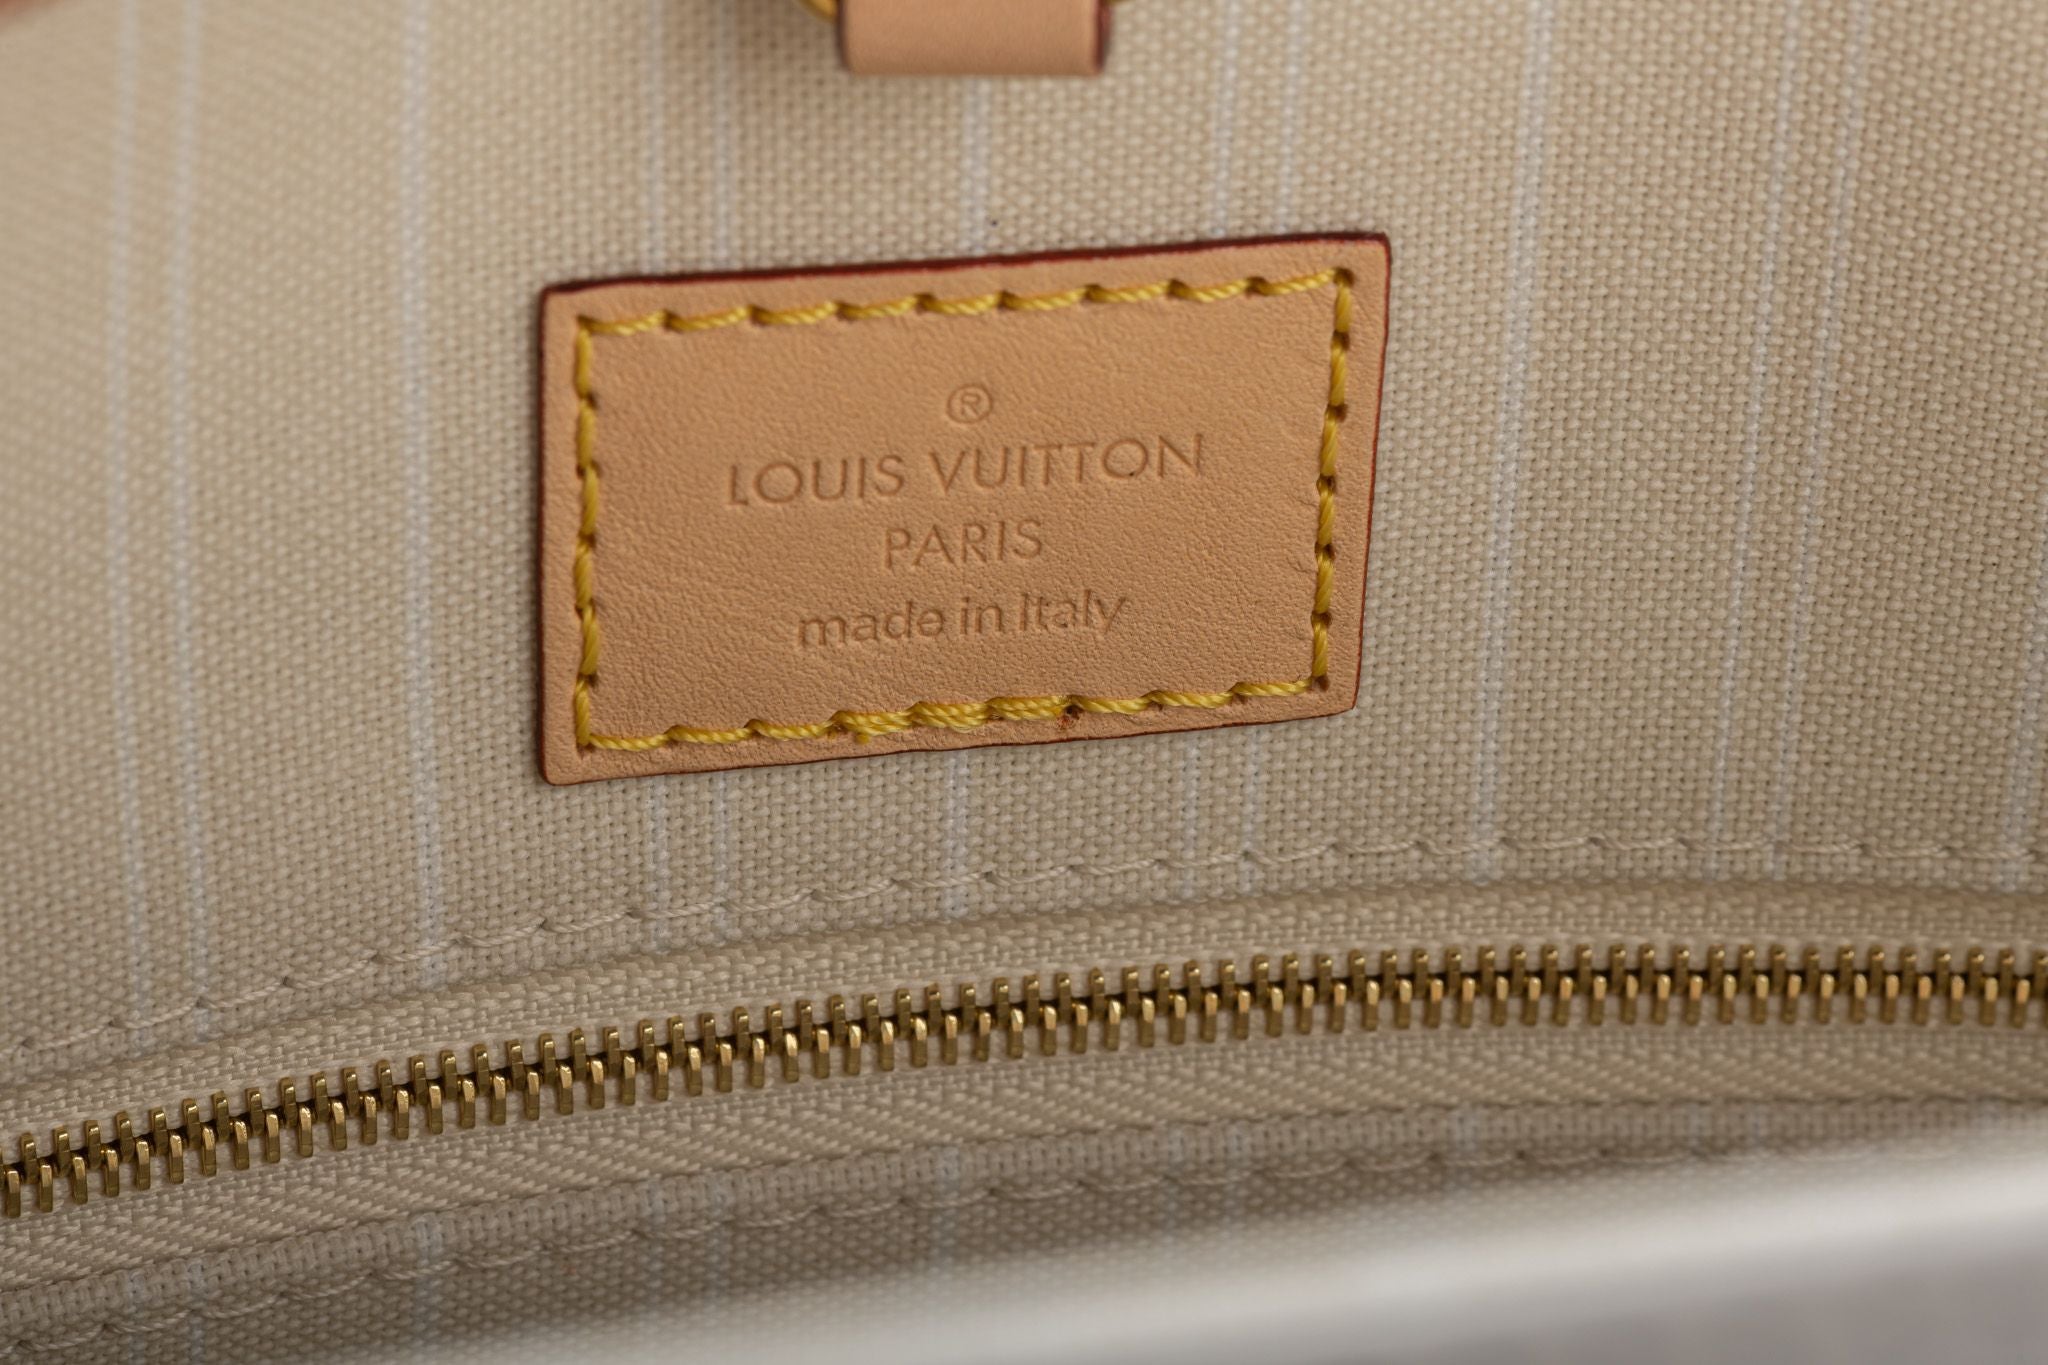 Louis Vuitton 2021 On The Go Palma de Mallorca Bag